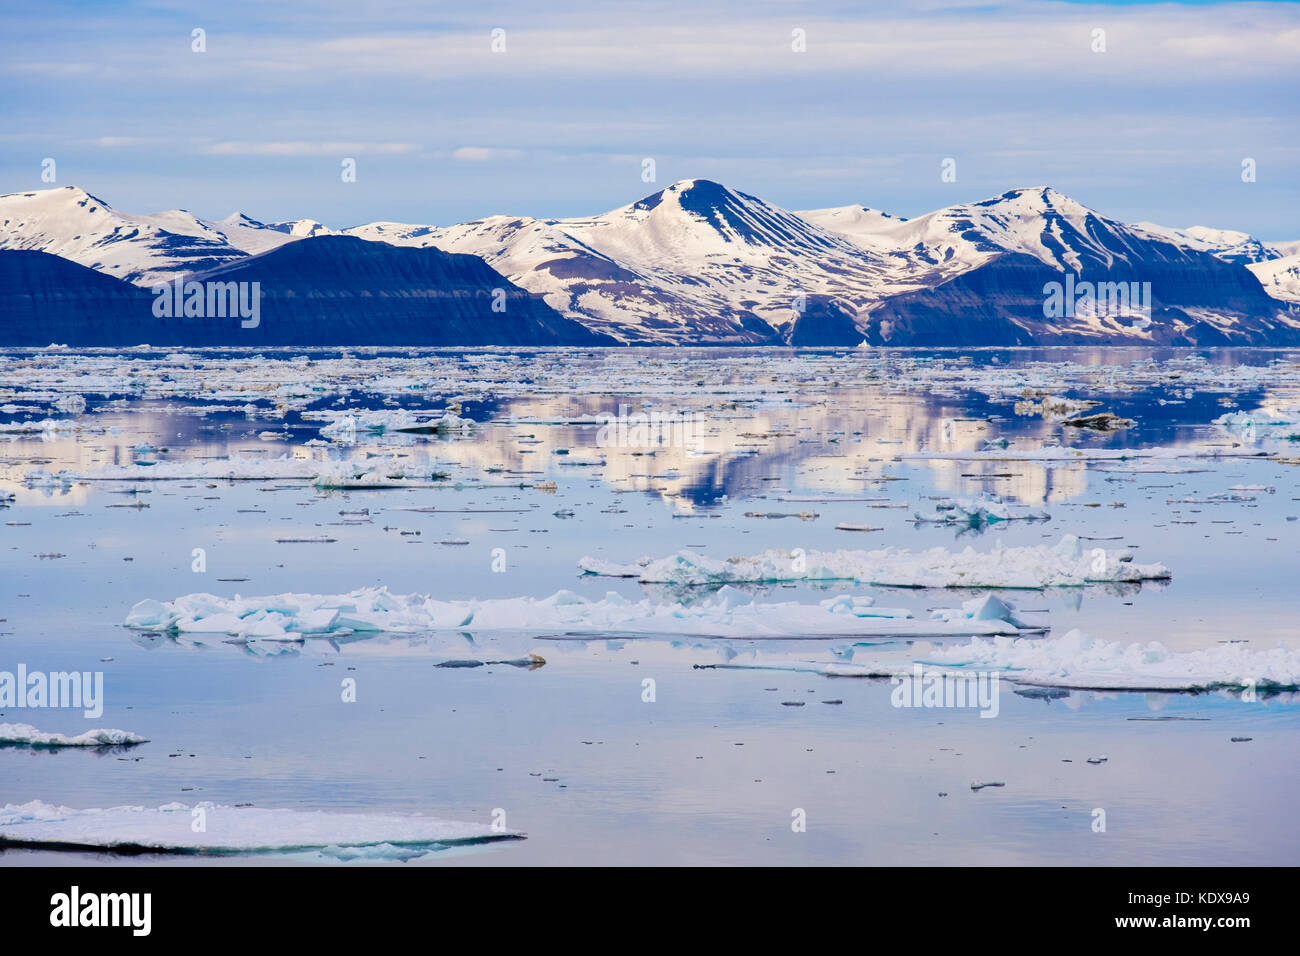 Vue sur la glace de mer au large de la montagne sur la côte est à 2 h en été arctique. (Storfjorden grand fjord), l'île de Spitsbergen, Svalbard, Norvège Banque D'Images